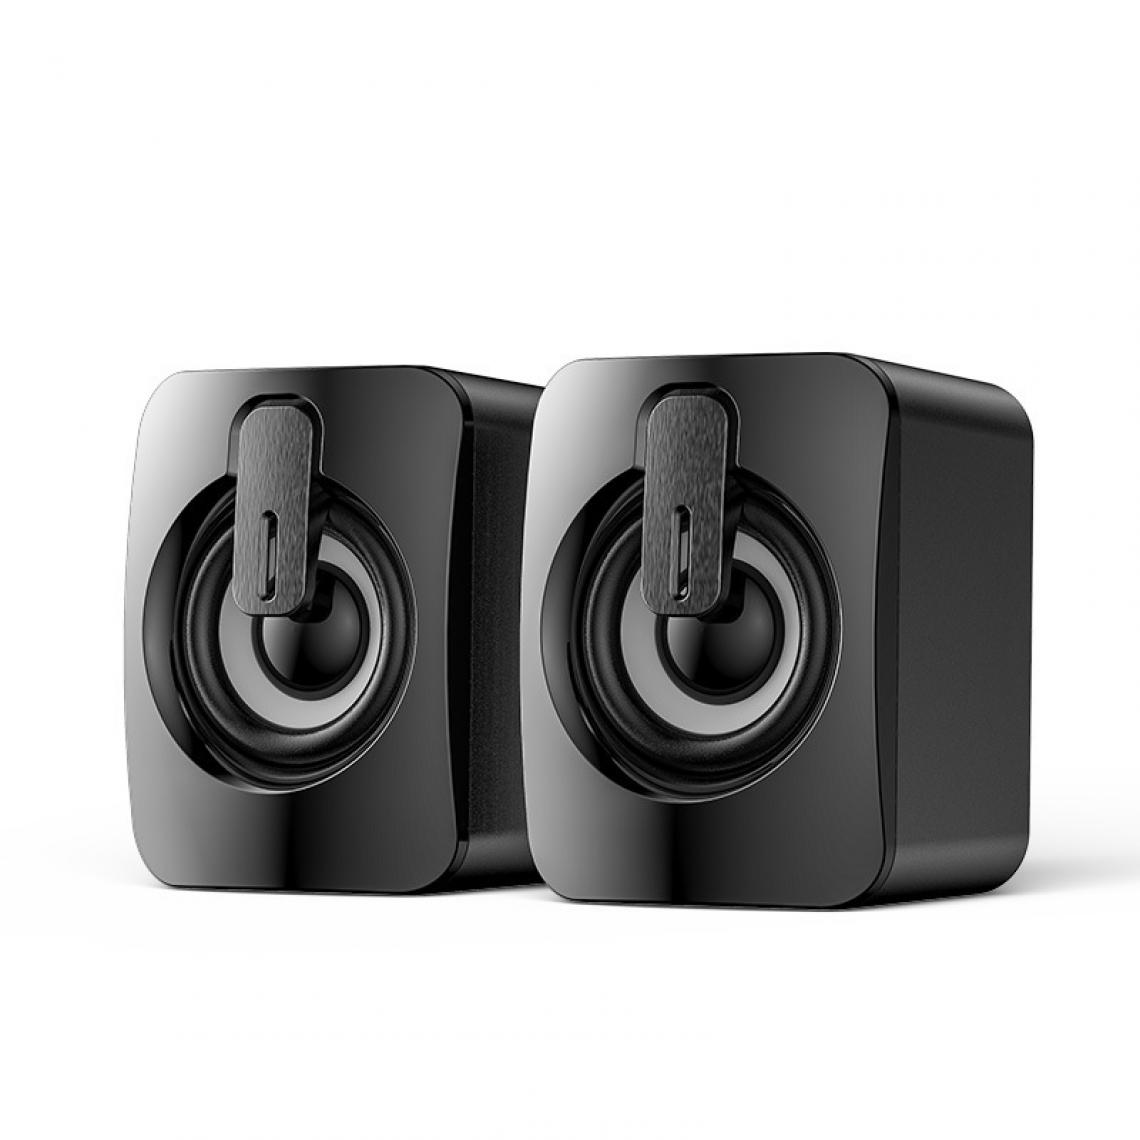 Universal - Haut-parleurs Bluetooth Haut-parleurs USB d'ordinateur 3D Stéréo Bass Sound Subwoofer PC Portable Desktop Multimedia Speakers | Haut-Parleurs d'ordinateur (Noir) - Enceinte PC